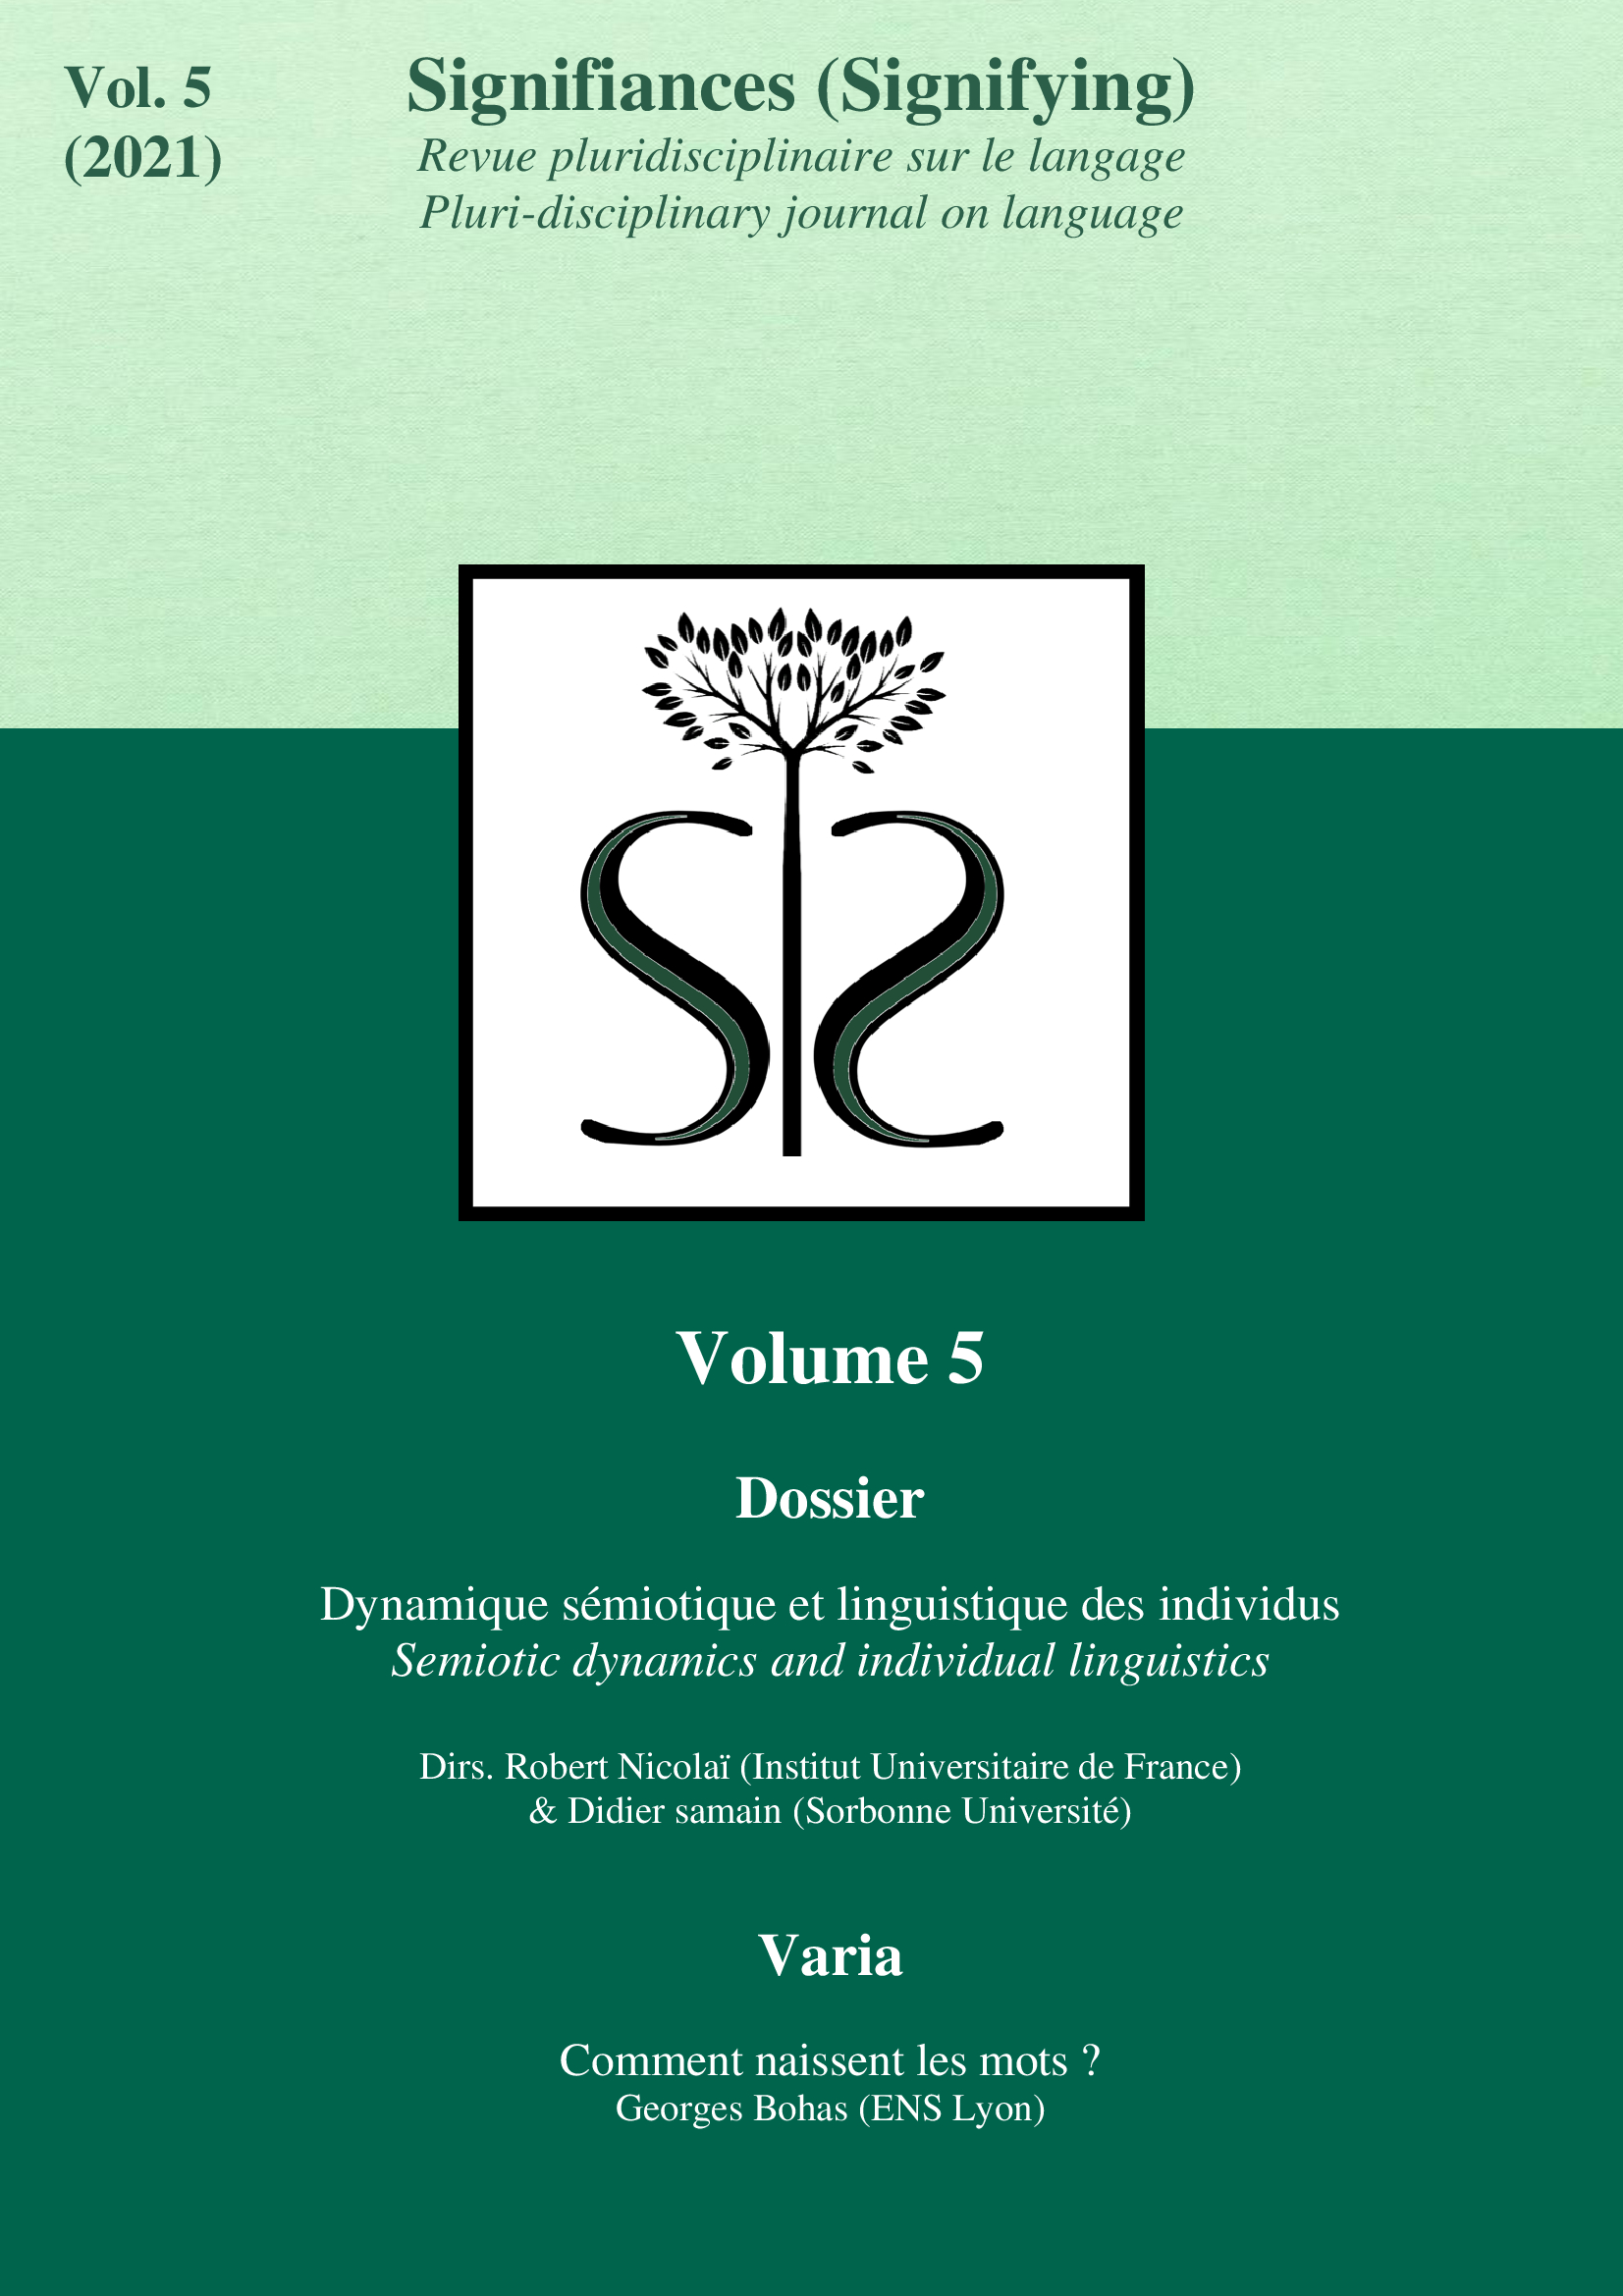 					Afficher Vol. 5 No. 1 (2021): Dynamique sémiotique et linguistique des individus
				